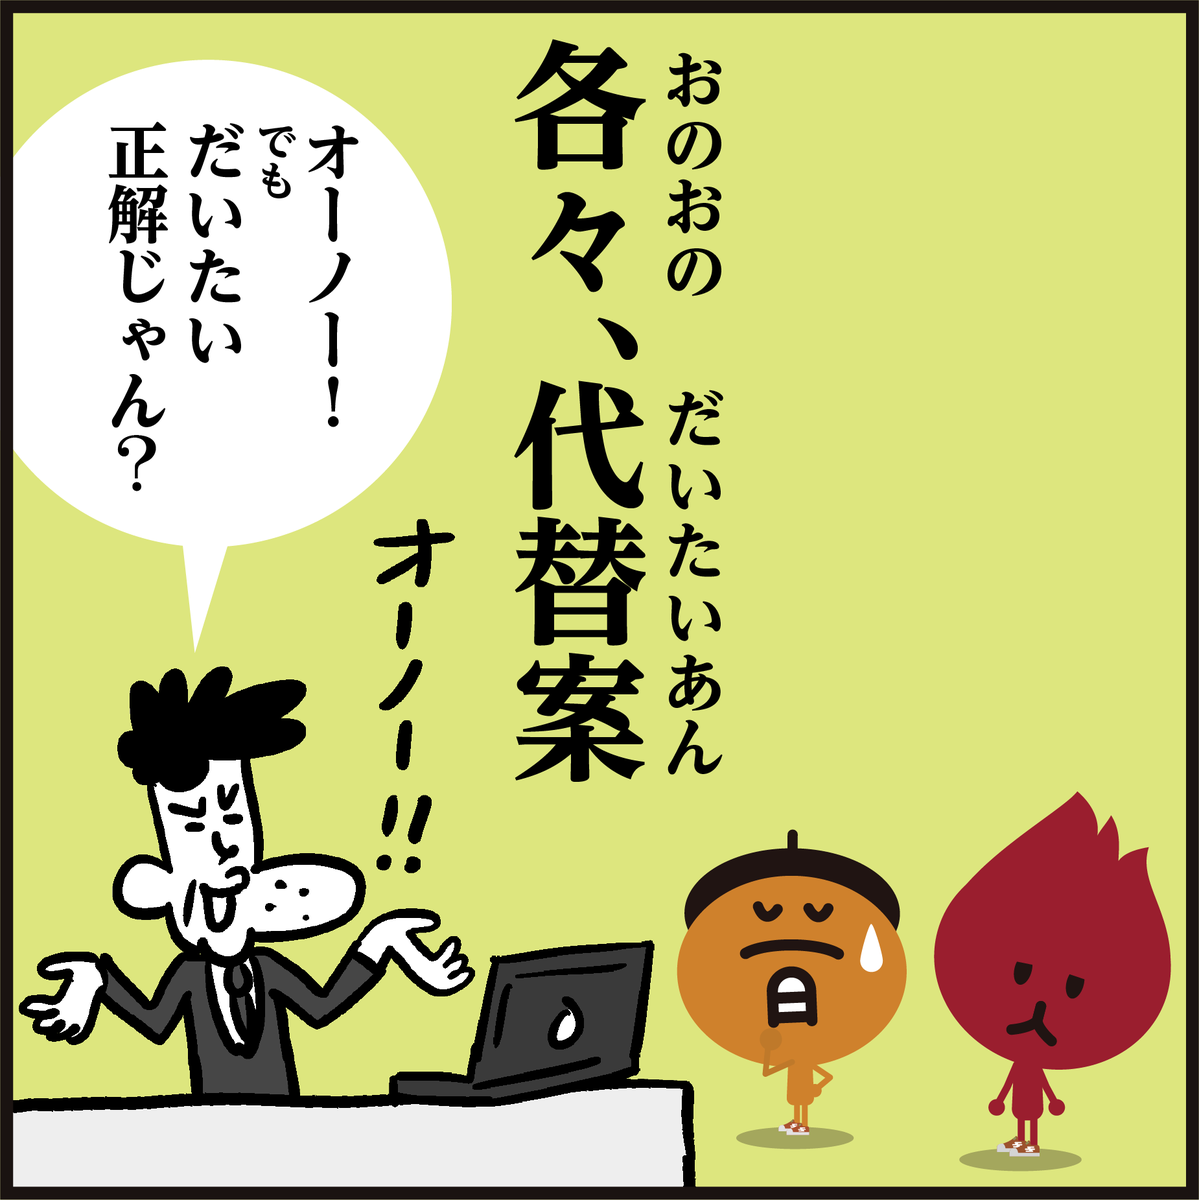 🤔漢字【各々・代替案】読める?
(かくかく・だいかえあん)
ではないですよ🙅📝4コマ漫画
#イラスト #クイズ #勉強 